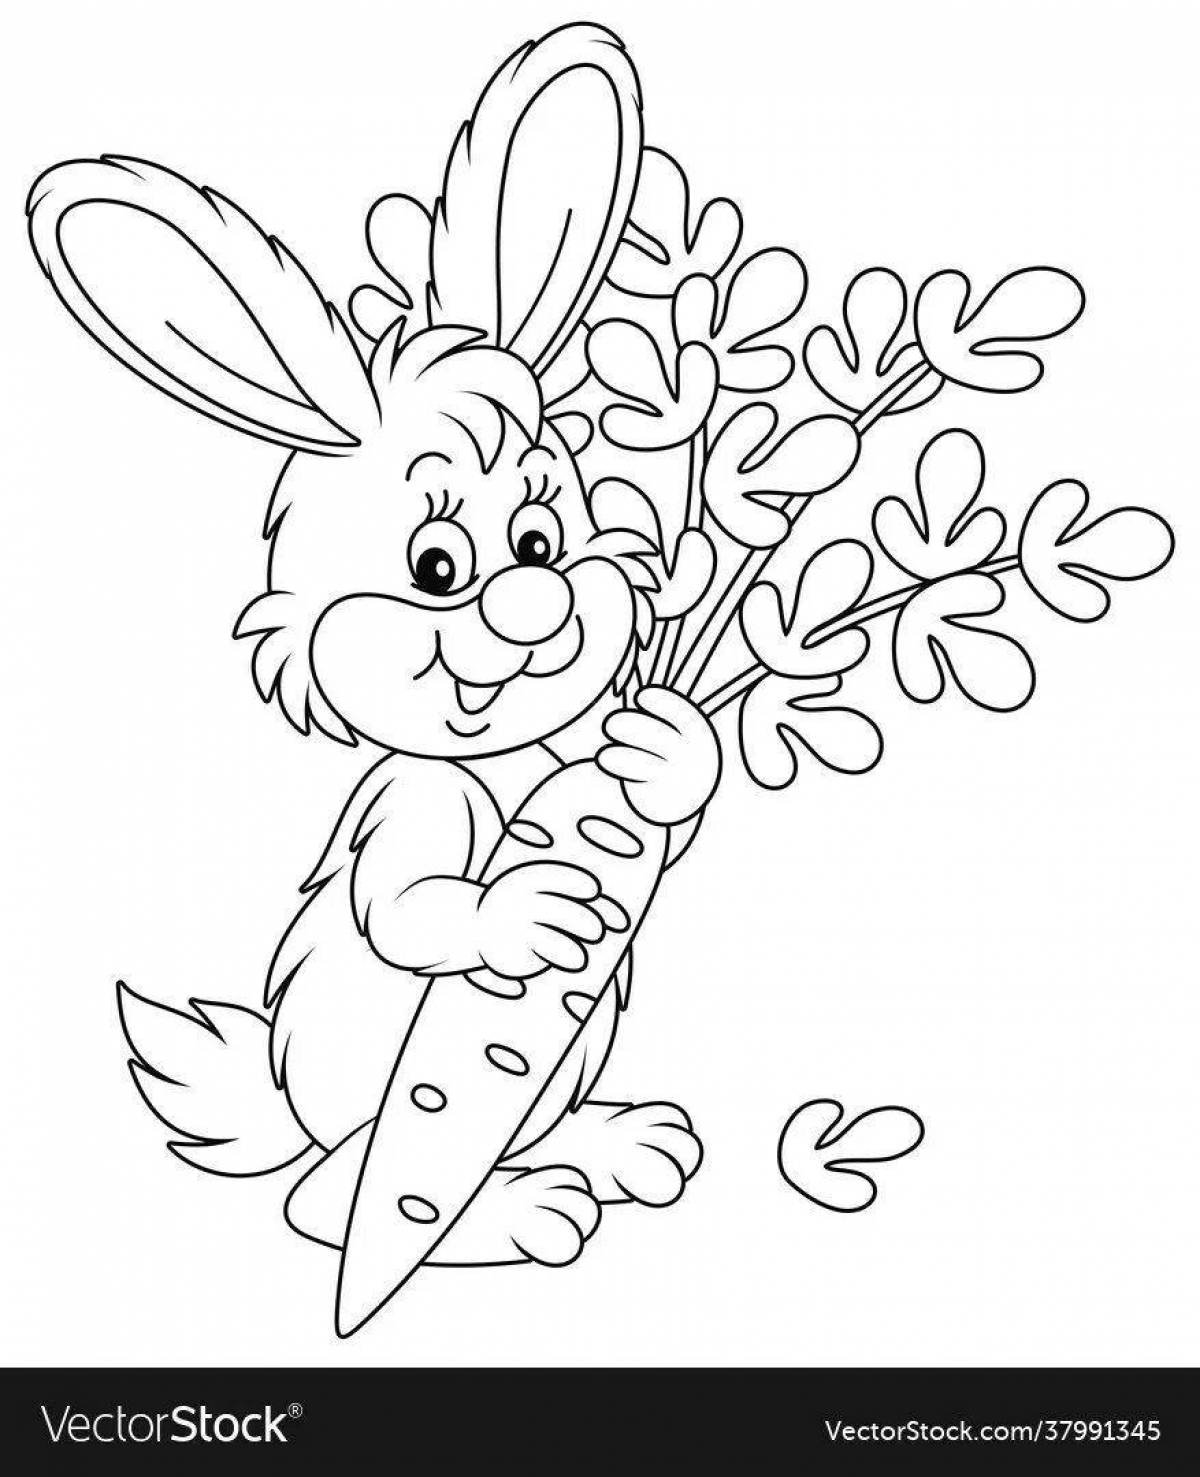 Кролики с морковкой — раскраска для детей. Распечатать бесплатно.